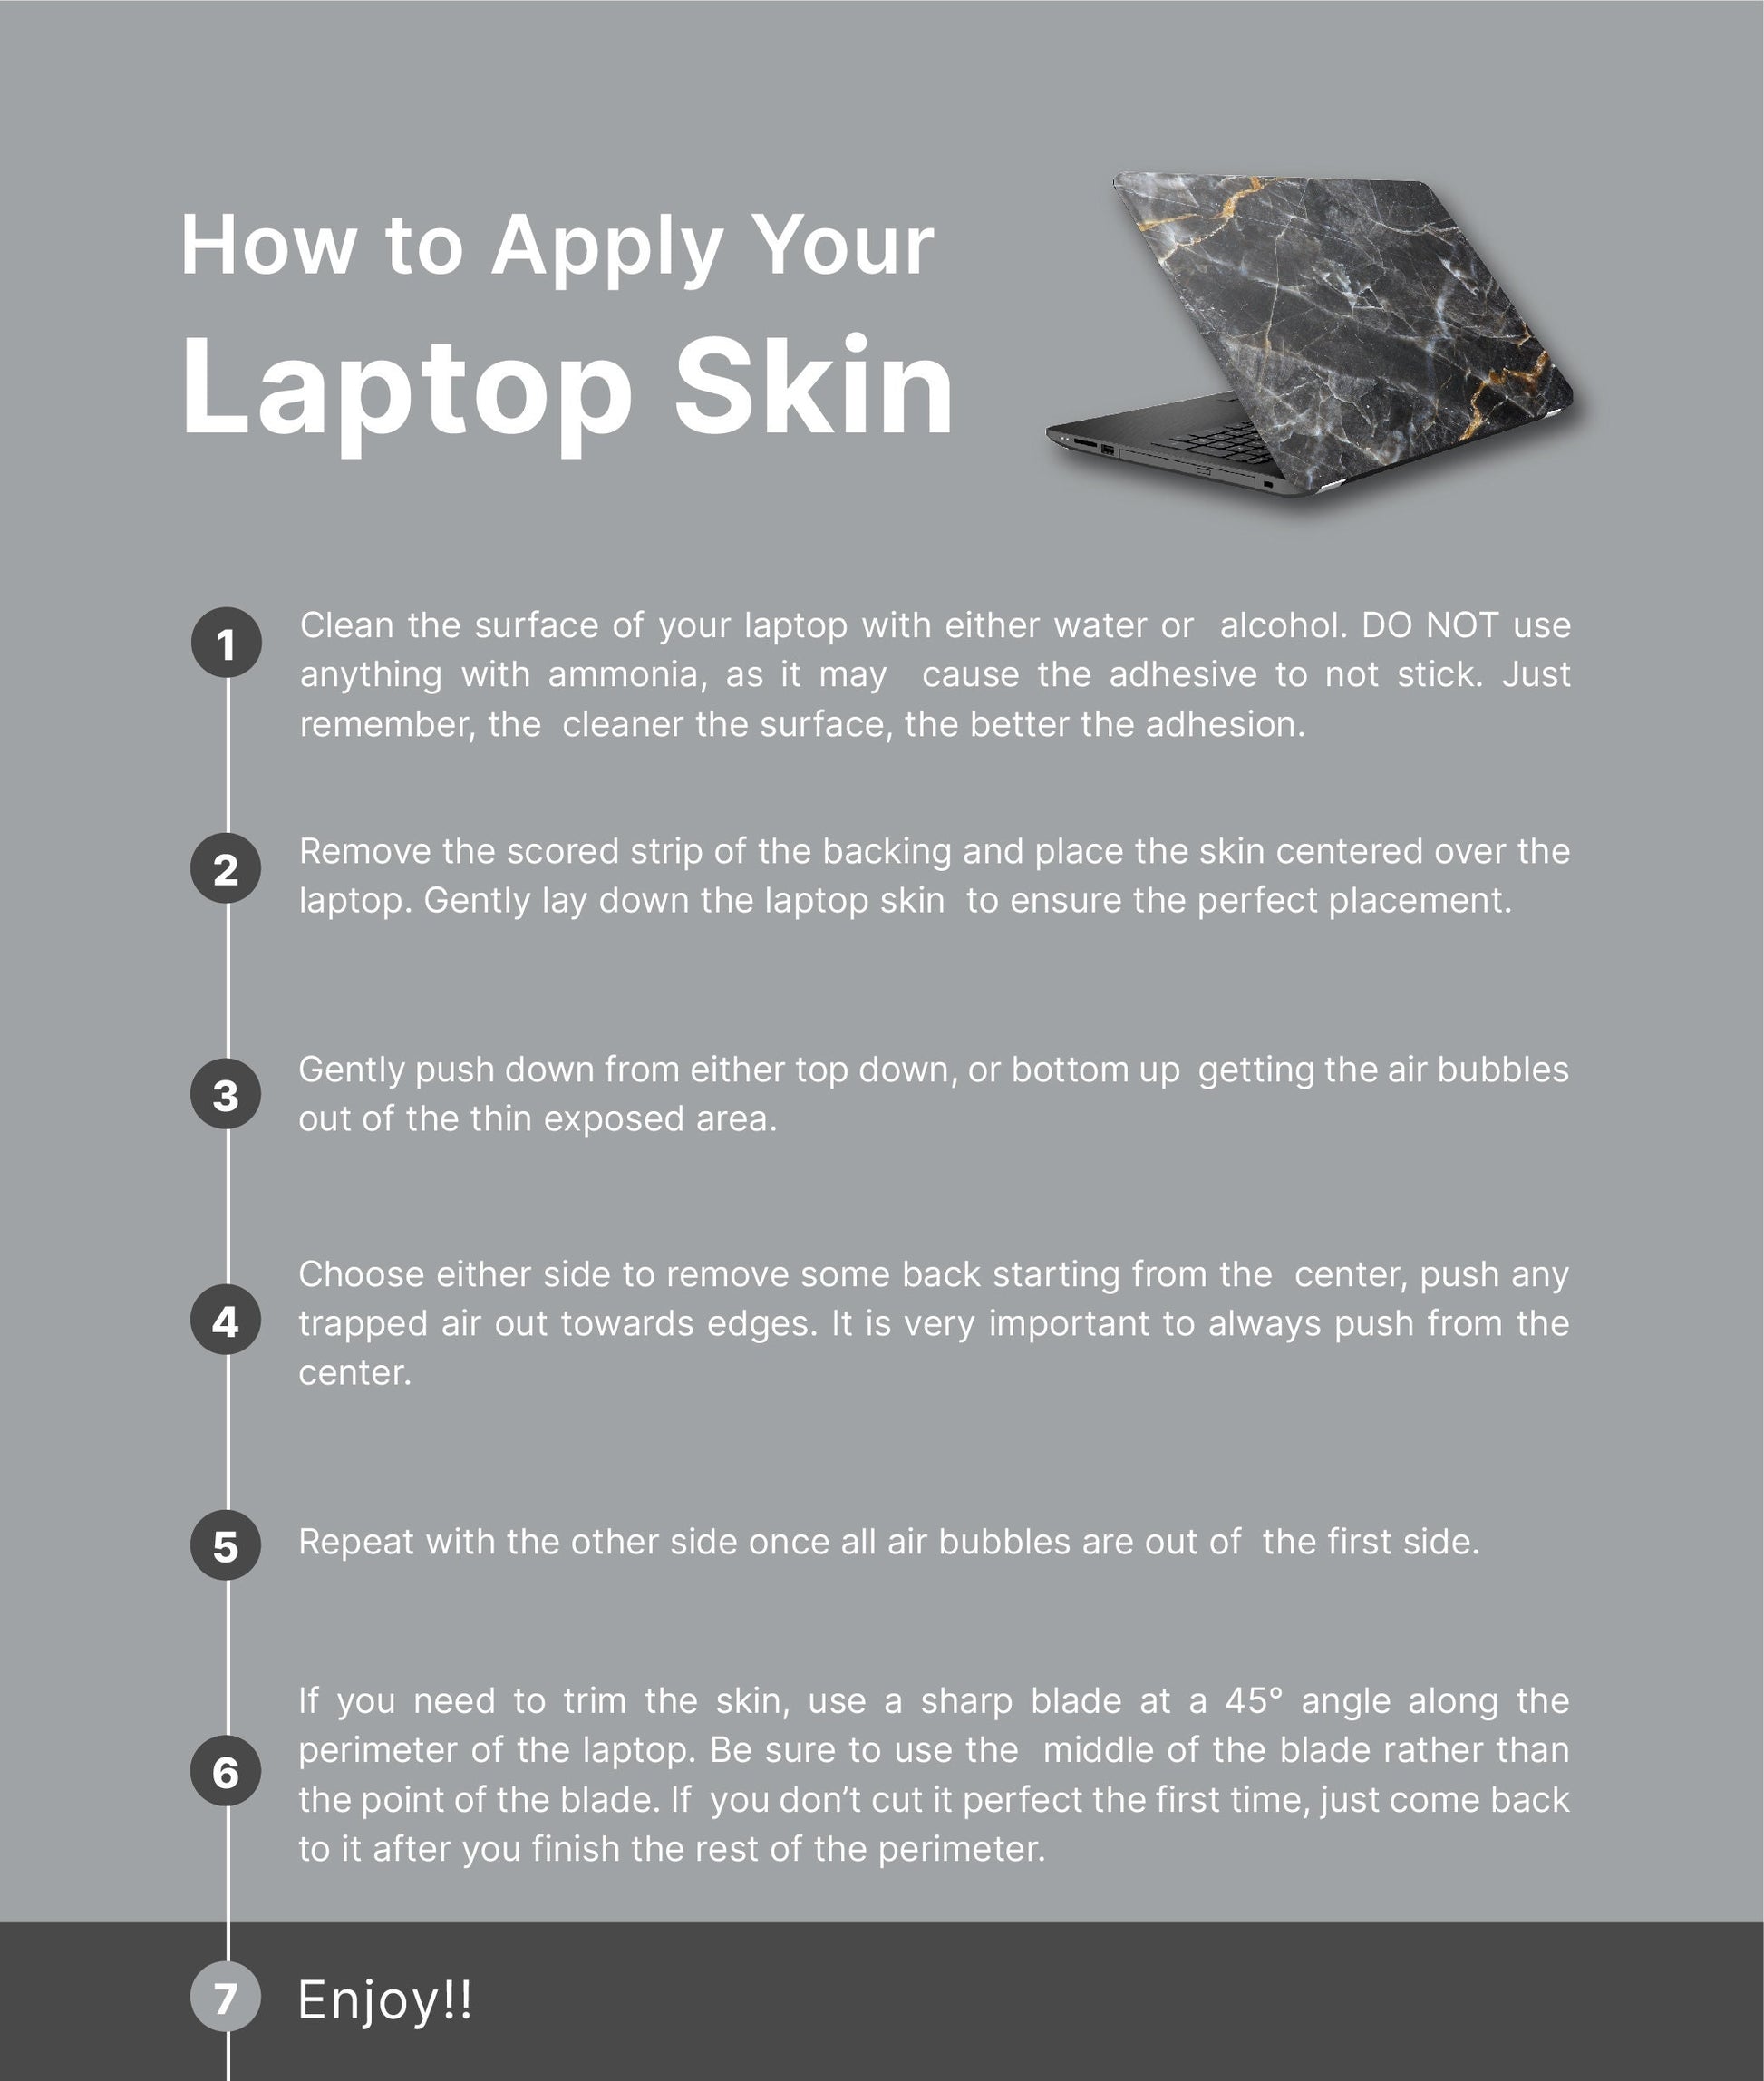 Desert Floral Laptop Skin, Laptop Cover, Laptop Skins, Removable Laptop Skins, Laptop Decal, Customized Laptop Skin, Laptop Stickers 101 - James & Inks